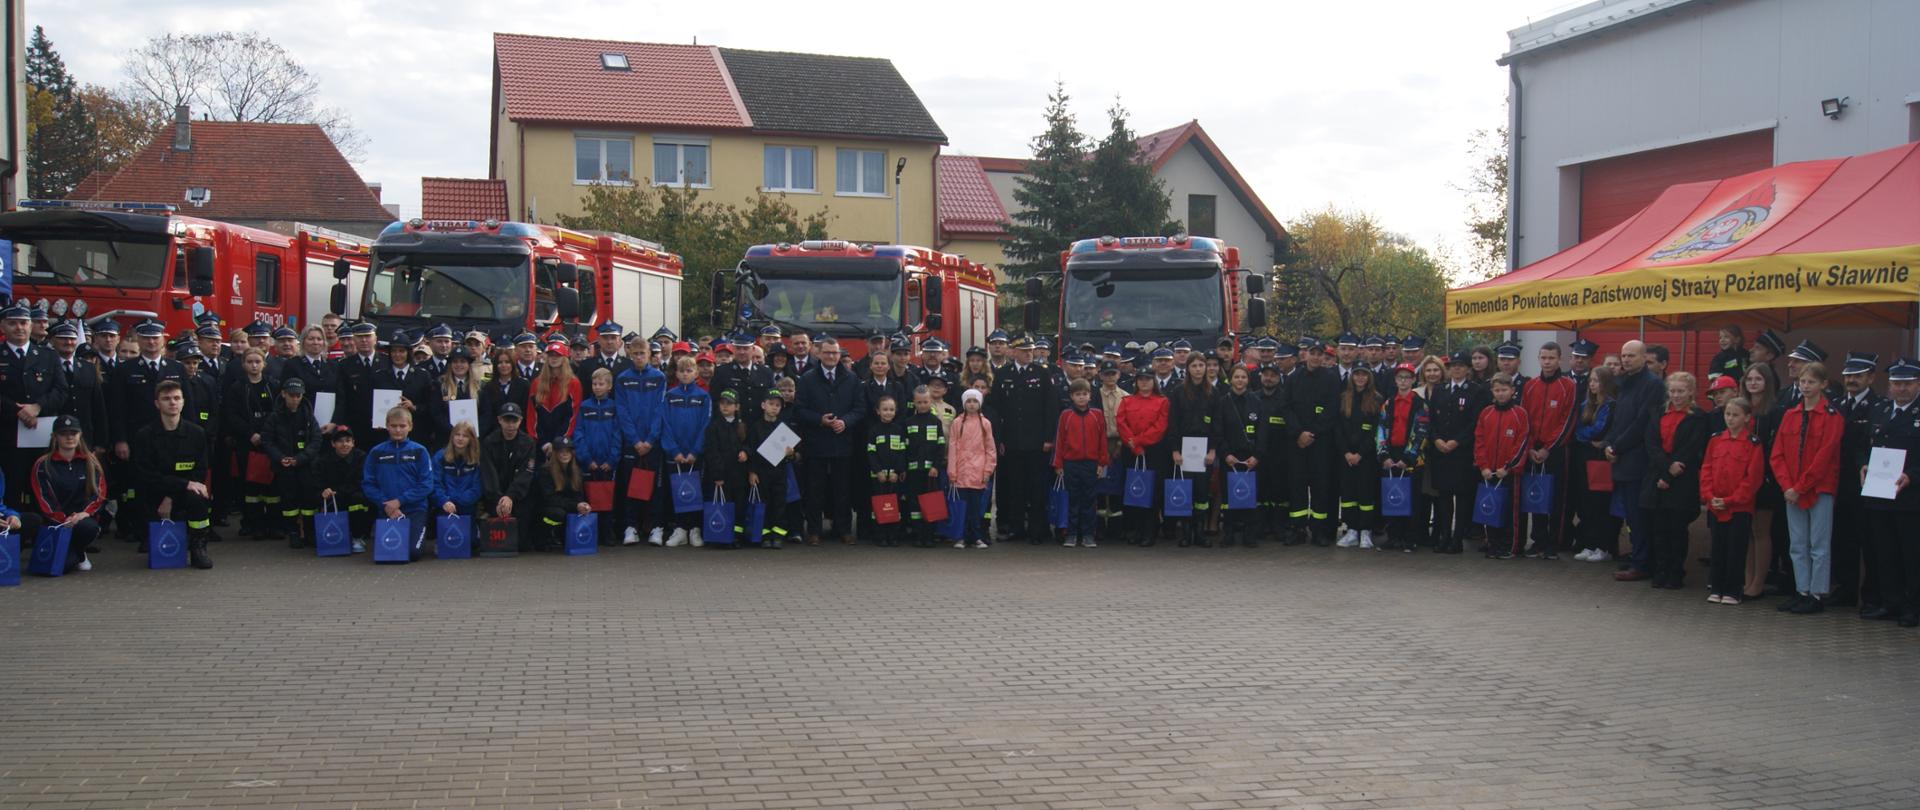 Zdjęcie zbiorowe członków OSP wraz z Młodzieżowymi Drużynami Pożarniczymi z terenu województwa zachodniopomorskiego na tle pojazdów pożarniczych